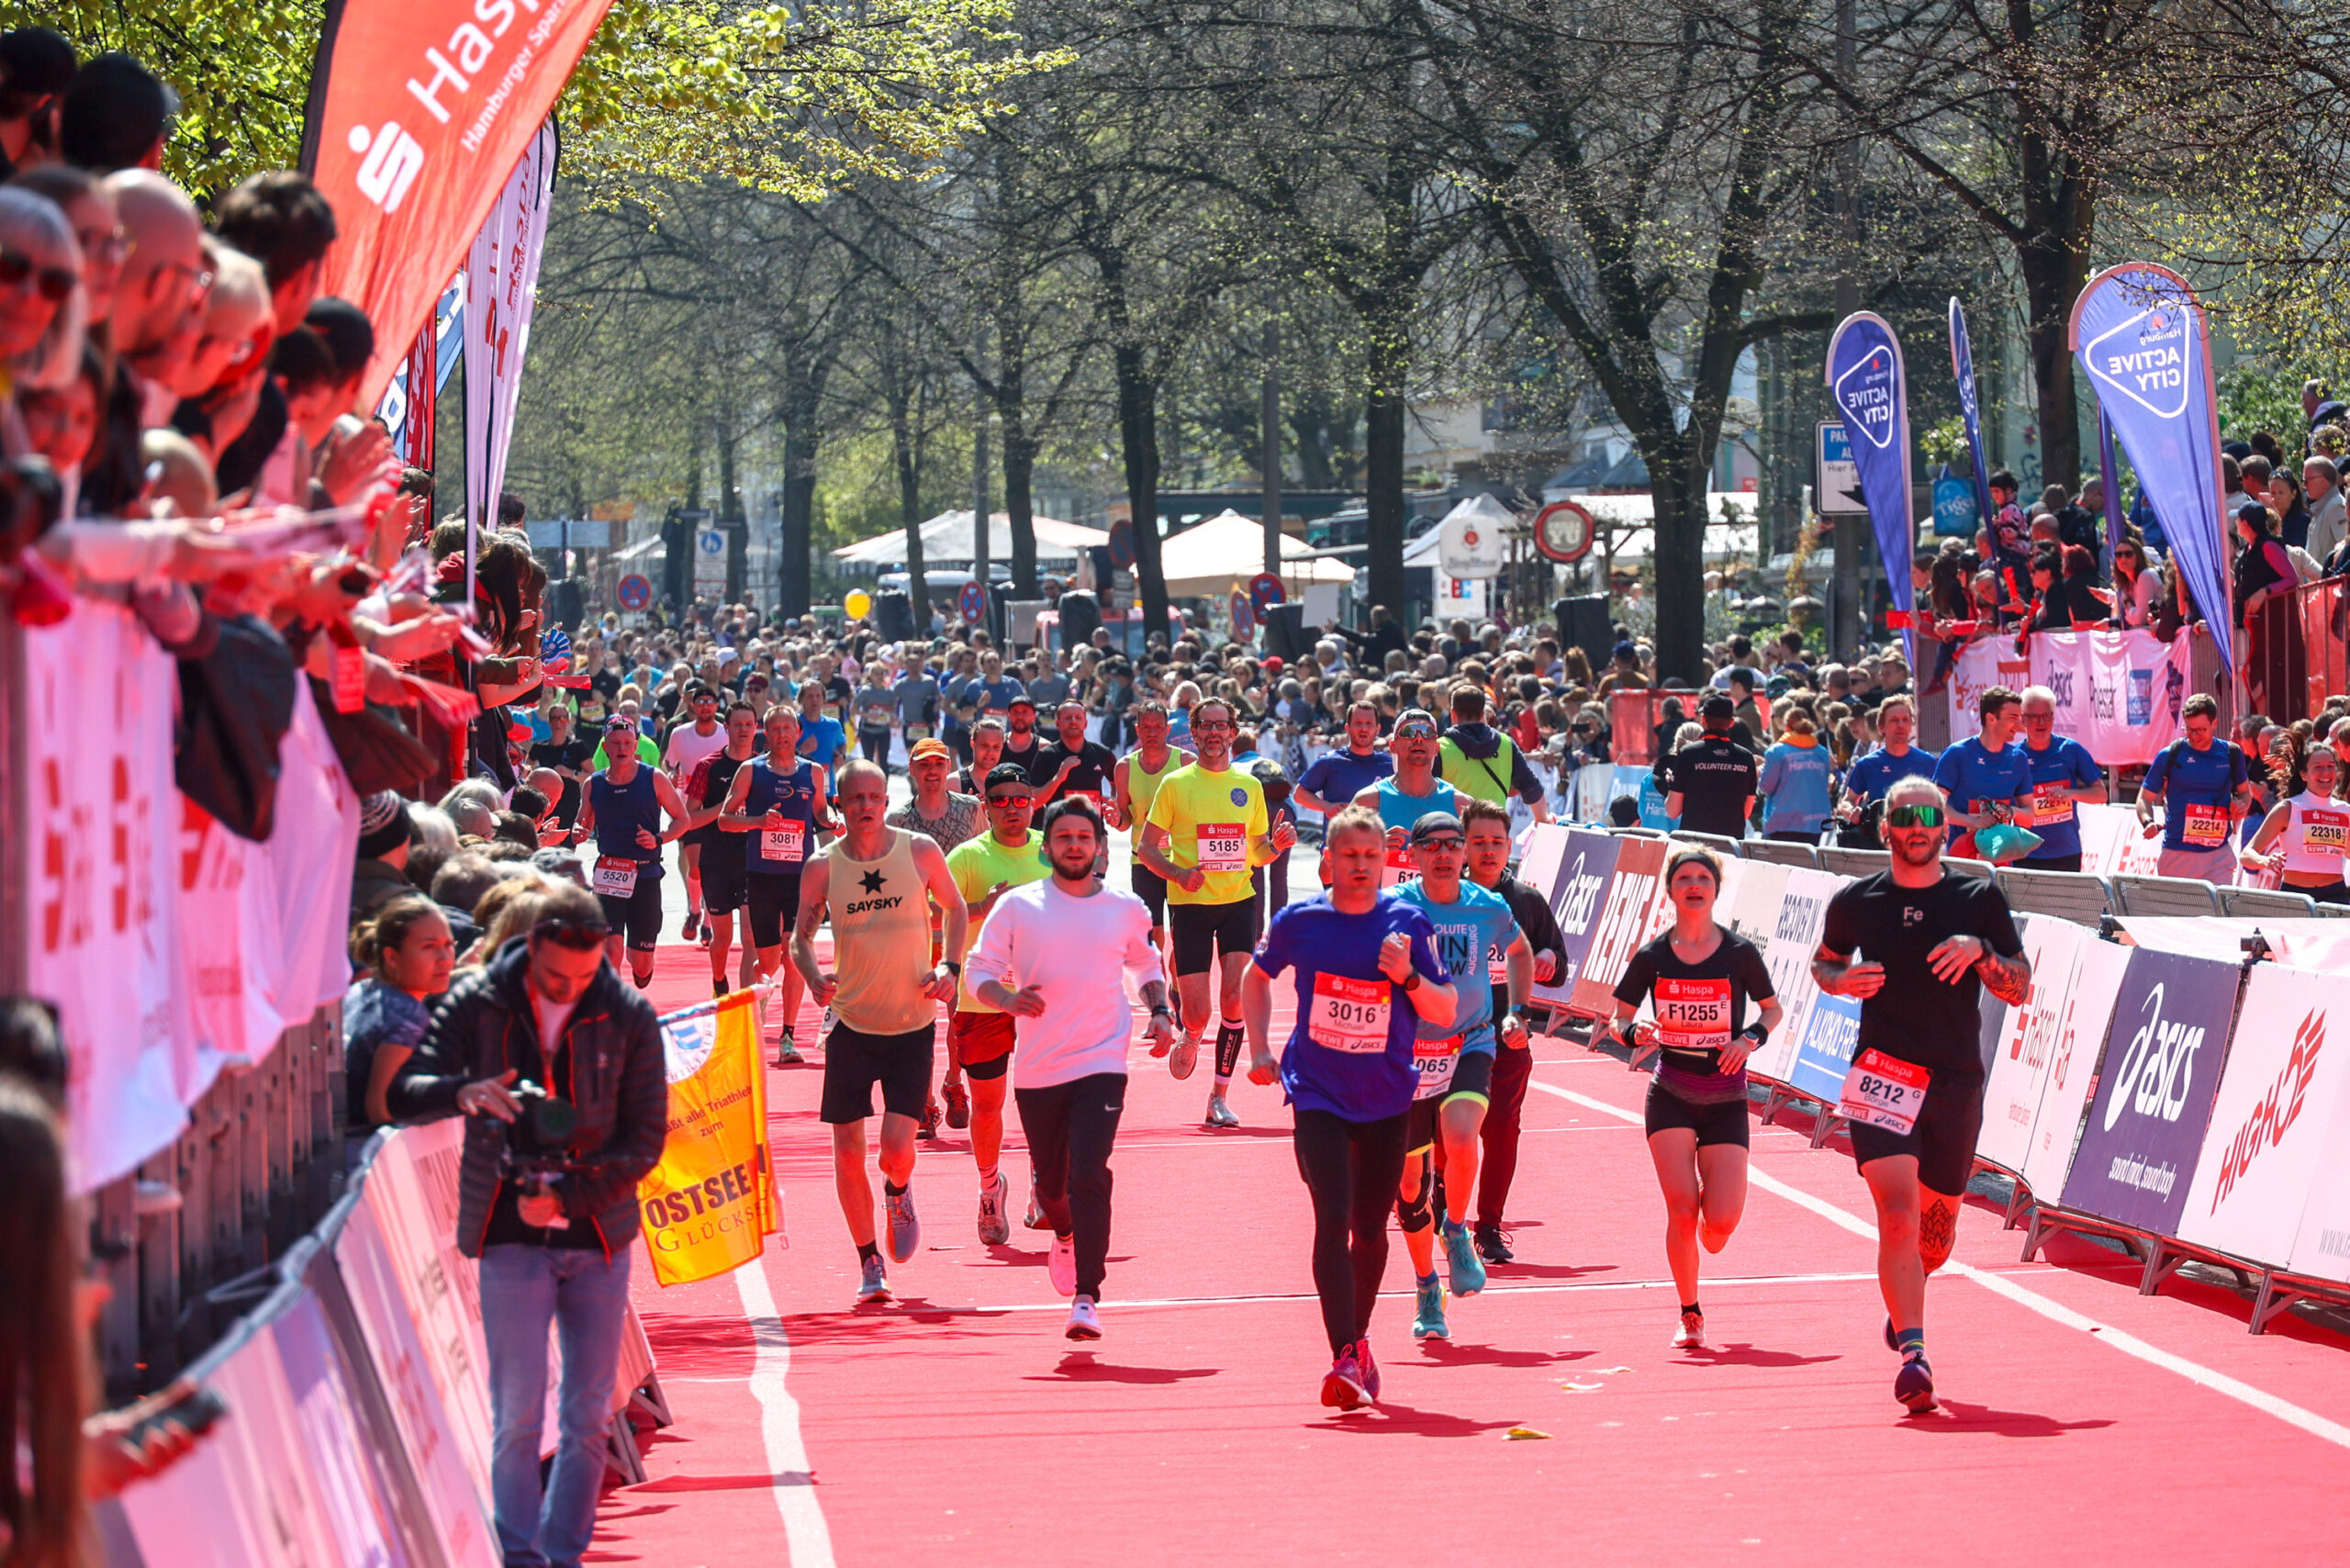 Gute Stimmung beim Hamburg Marathon: Das Publikum feiert die Läufer, die ins Ziel kommen.